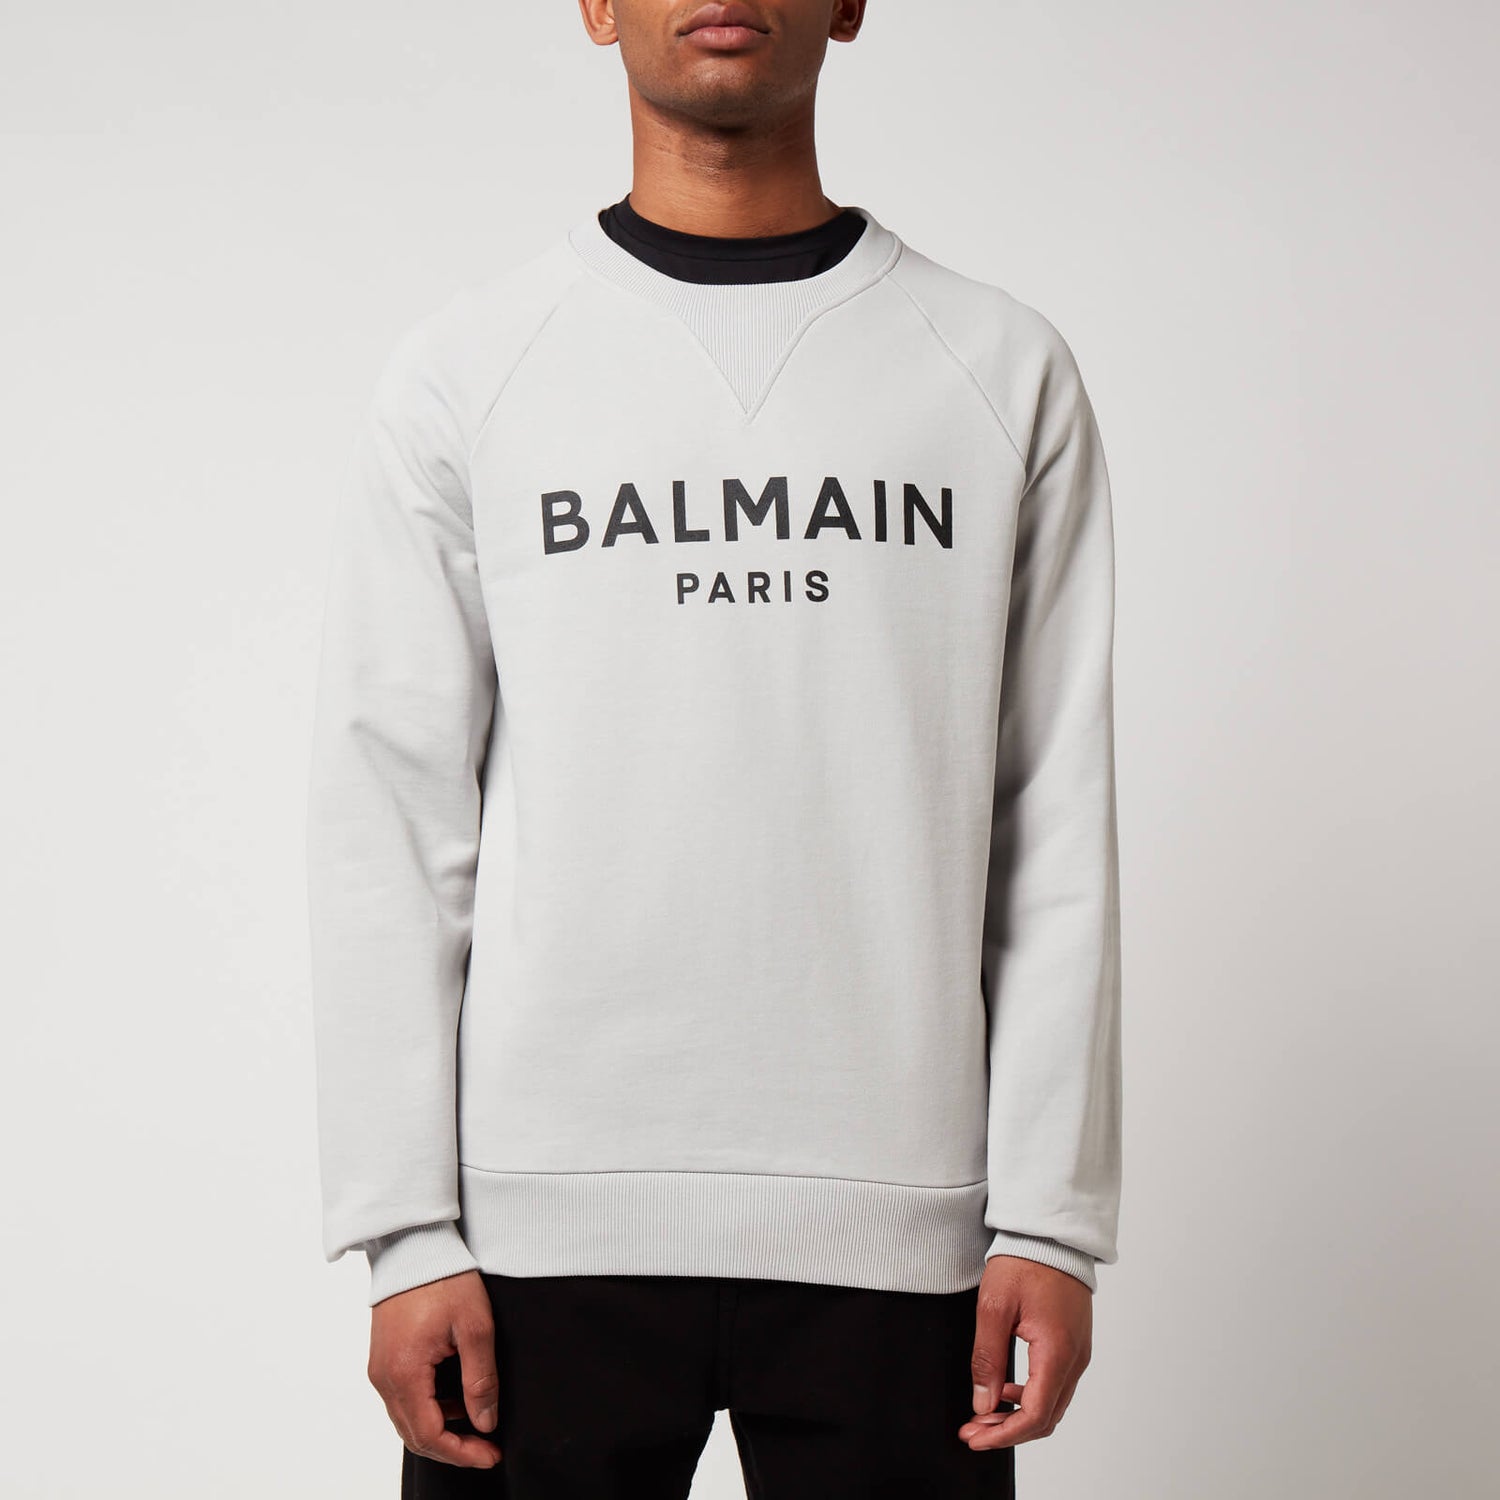 Balmain Men's Printed Sweatshirt - Grey/Black - S